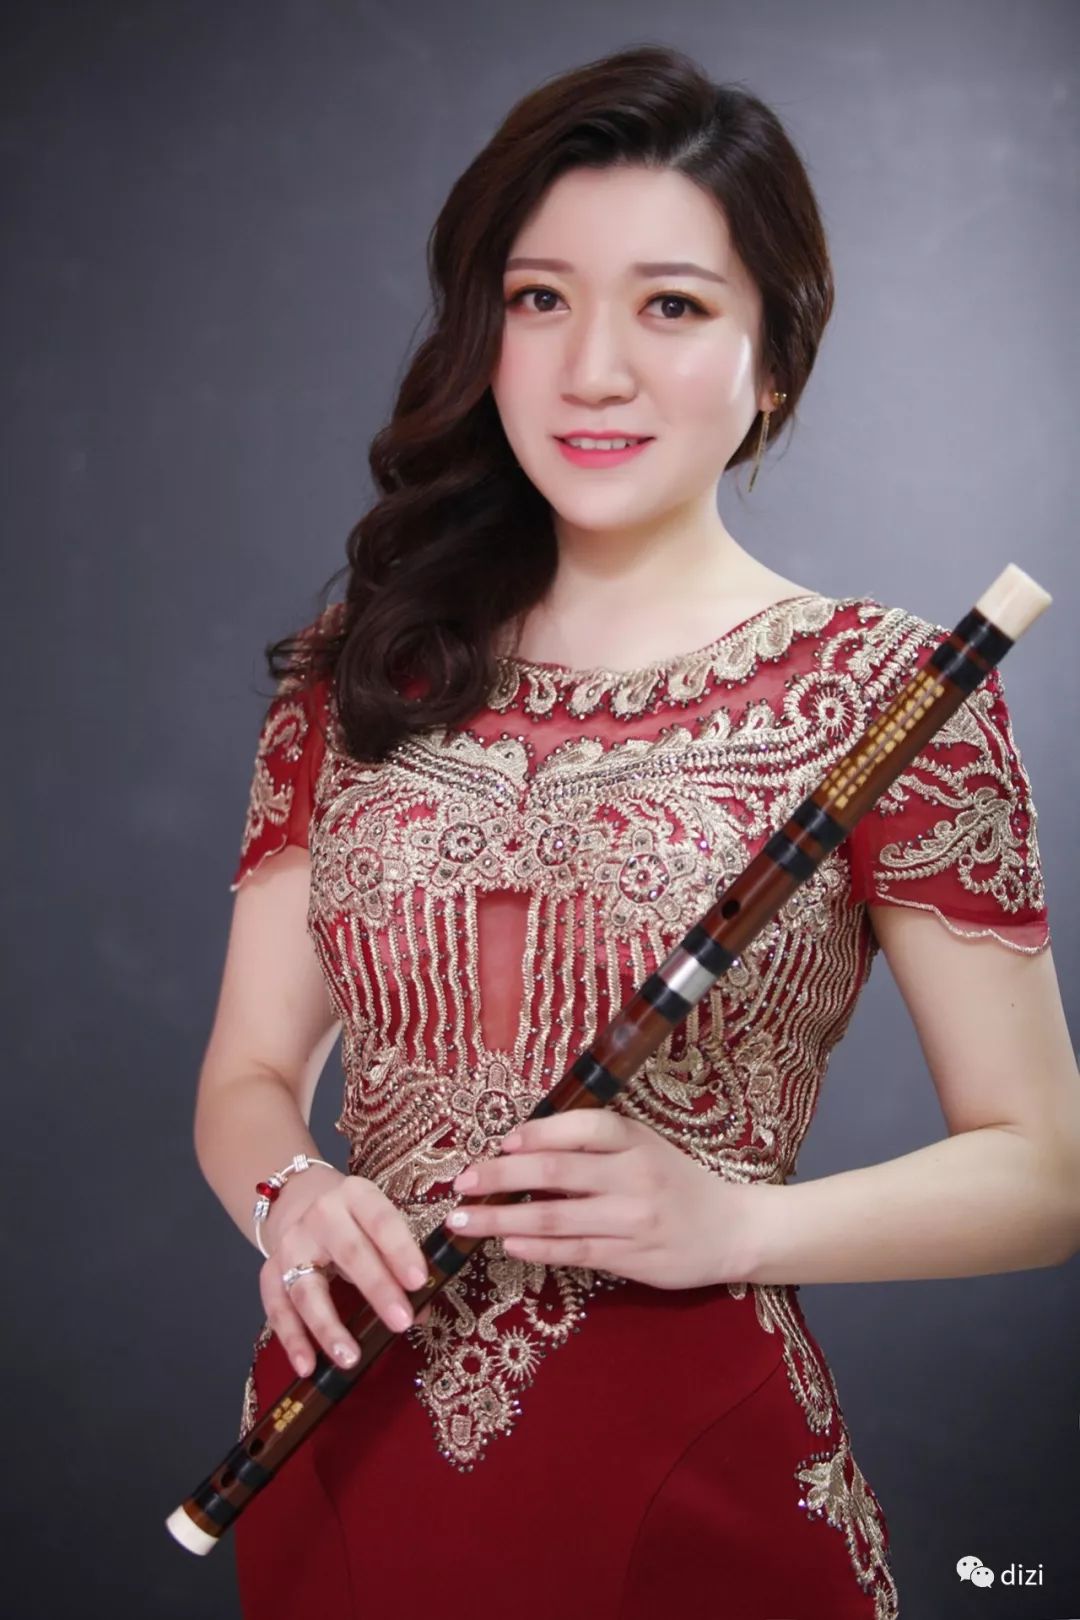 楚风竹笛乐团排练《风之剑》1月12日,该乐团将在武汉琴台音乐厅,演奏